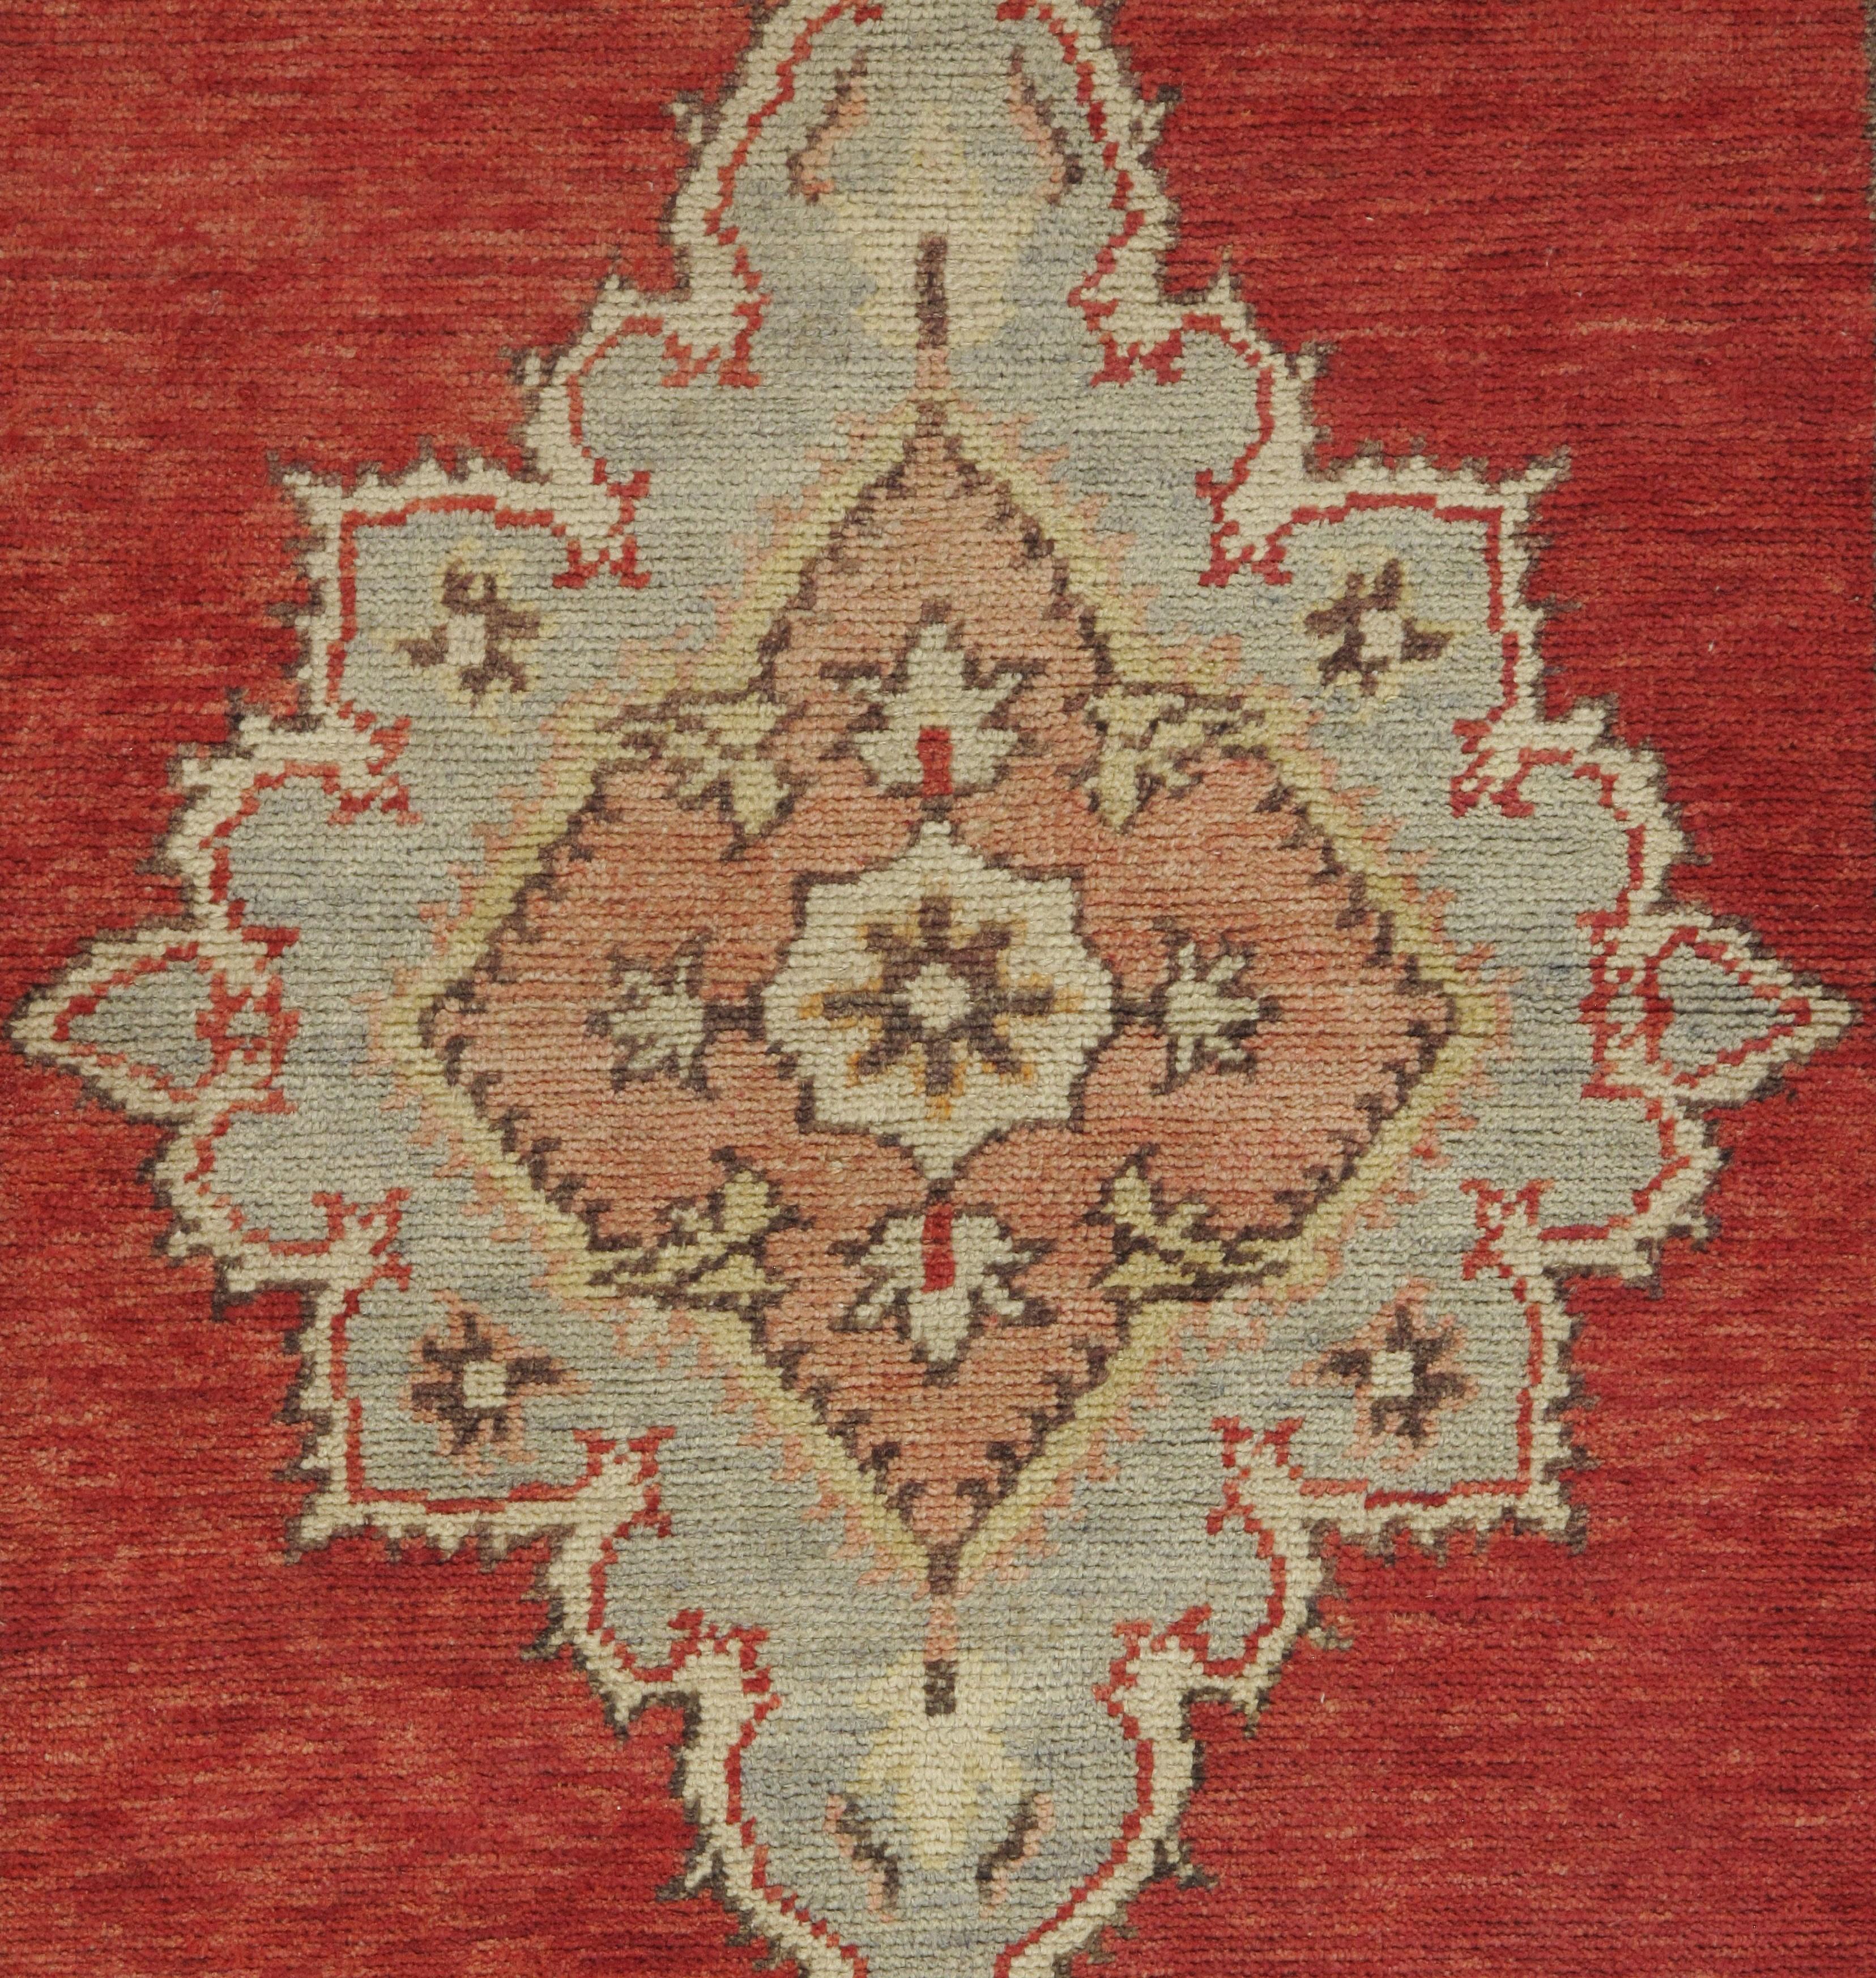 Türkischer Oushak-Teppichläufer, Vintage, um 1940. Handgeknüpft in der Türkei, wo die Teppichweberei eher eine Kultur als ein Geschäft ist. Teppiche aus der Türkei sind bekannt für die hohe Qualität ihrer Wolle, ihre schönen Muster und warmen